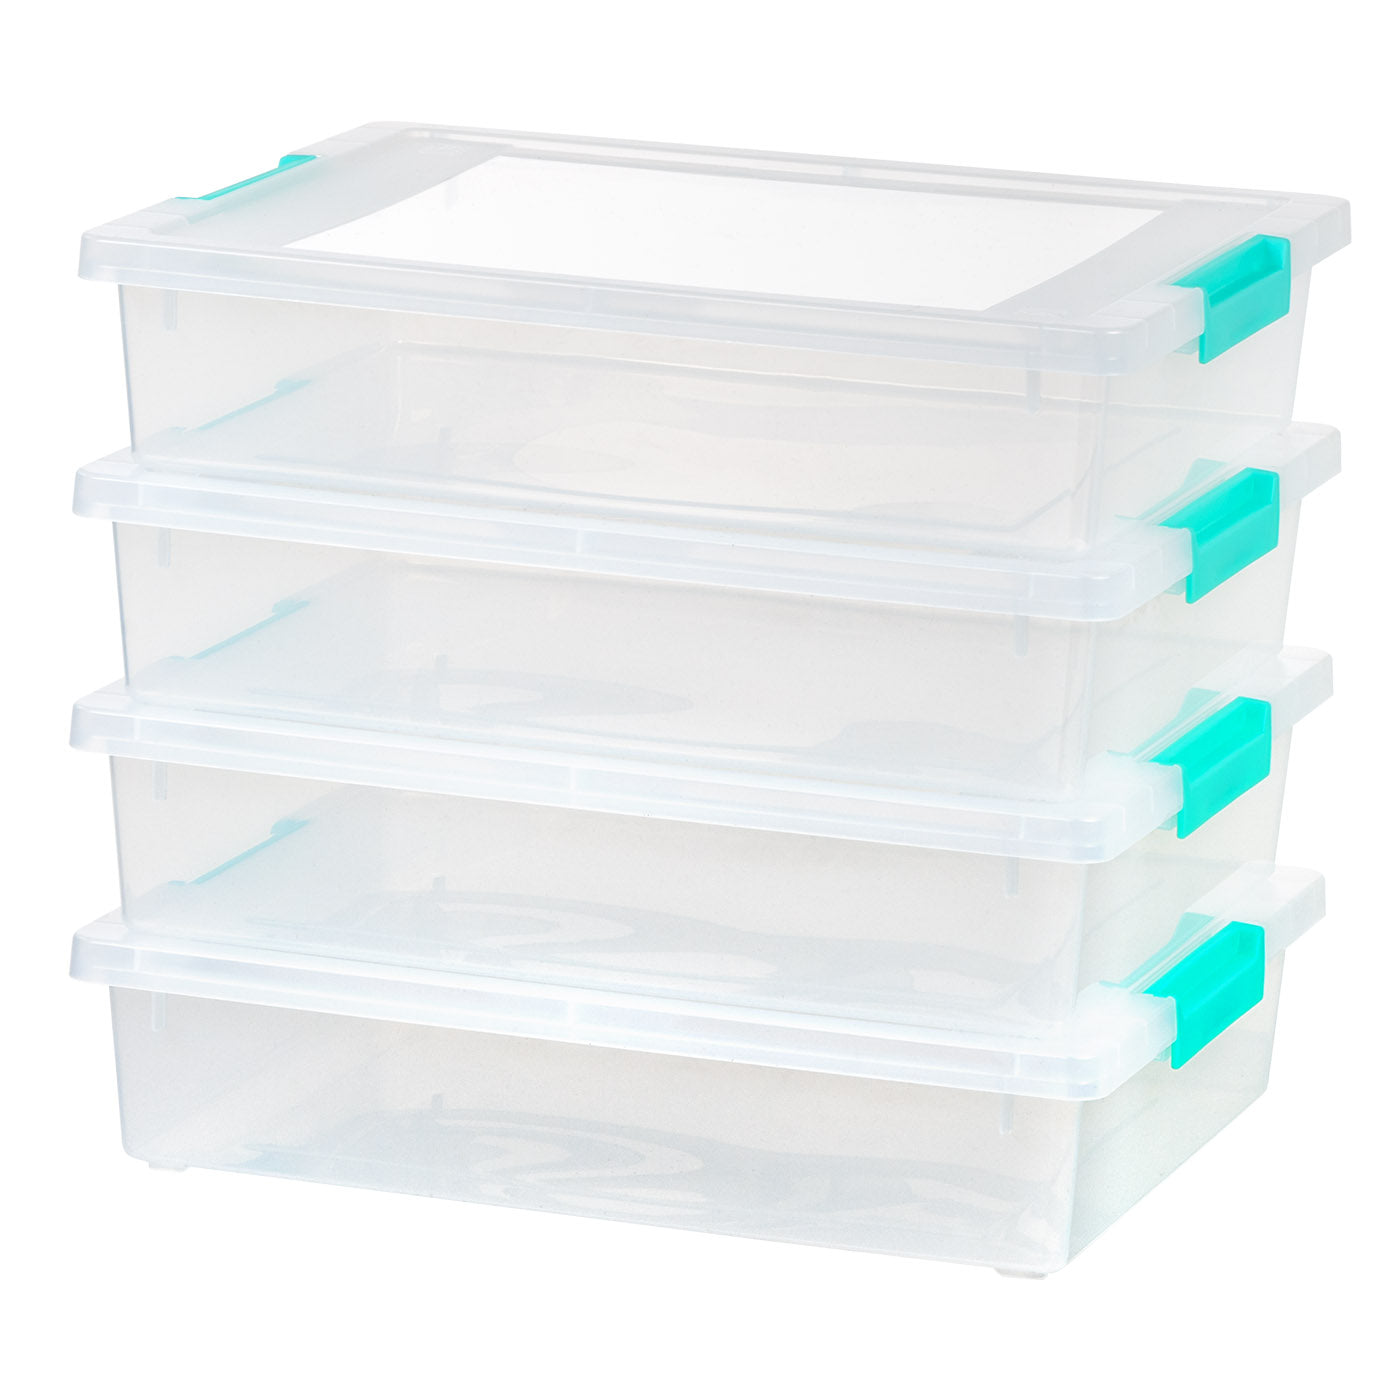 Iris 6 Quart Clear Storage Box